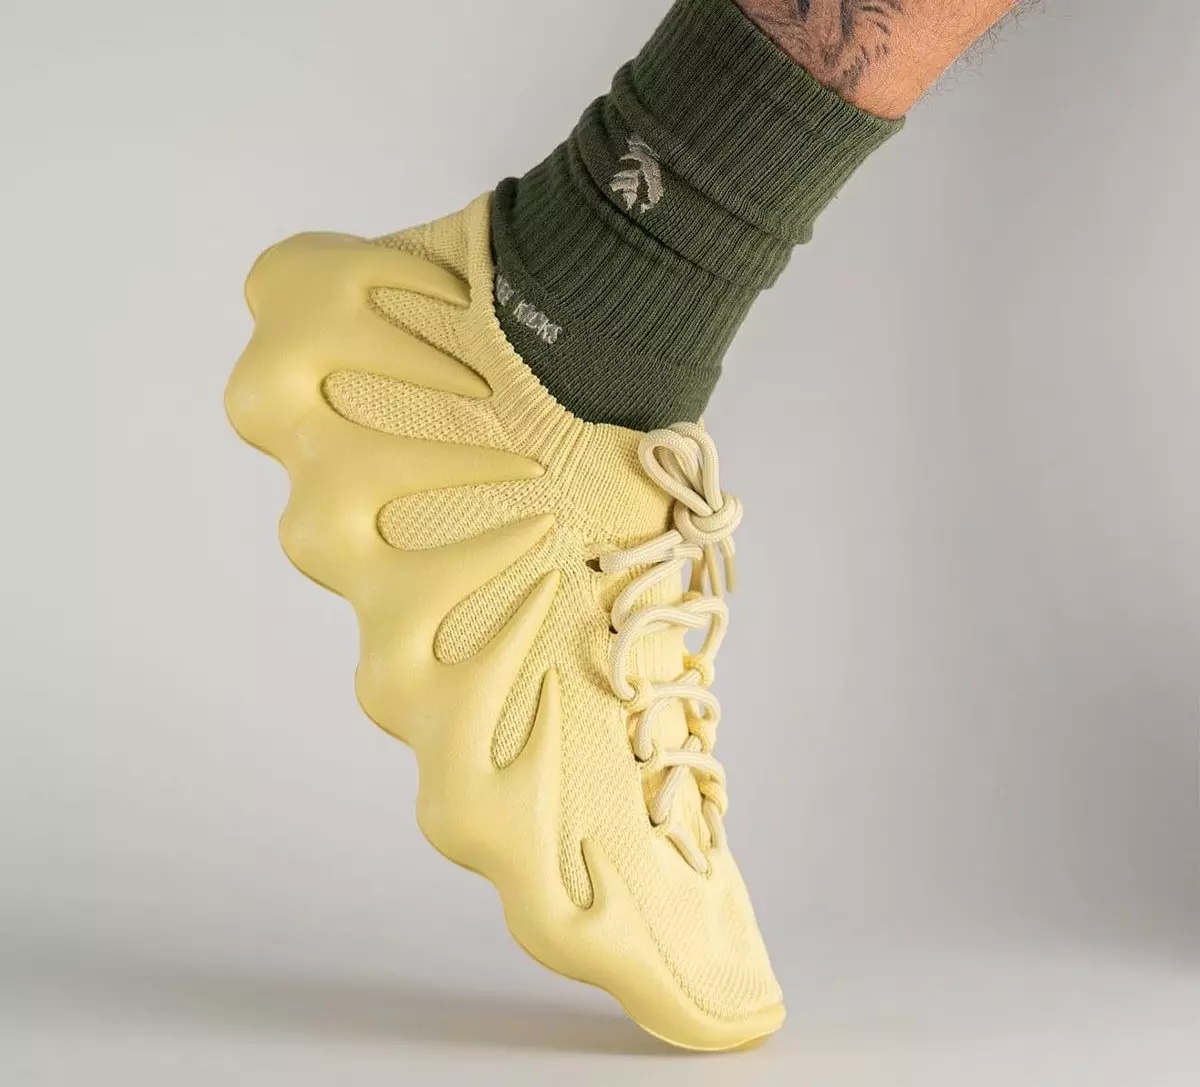 adidas Yeezy 450 күкірттің шығарылған күні